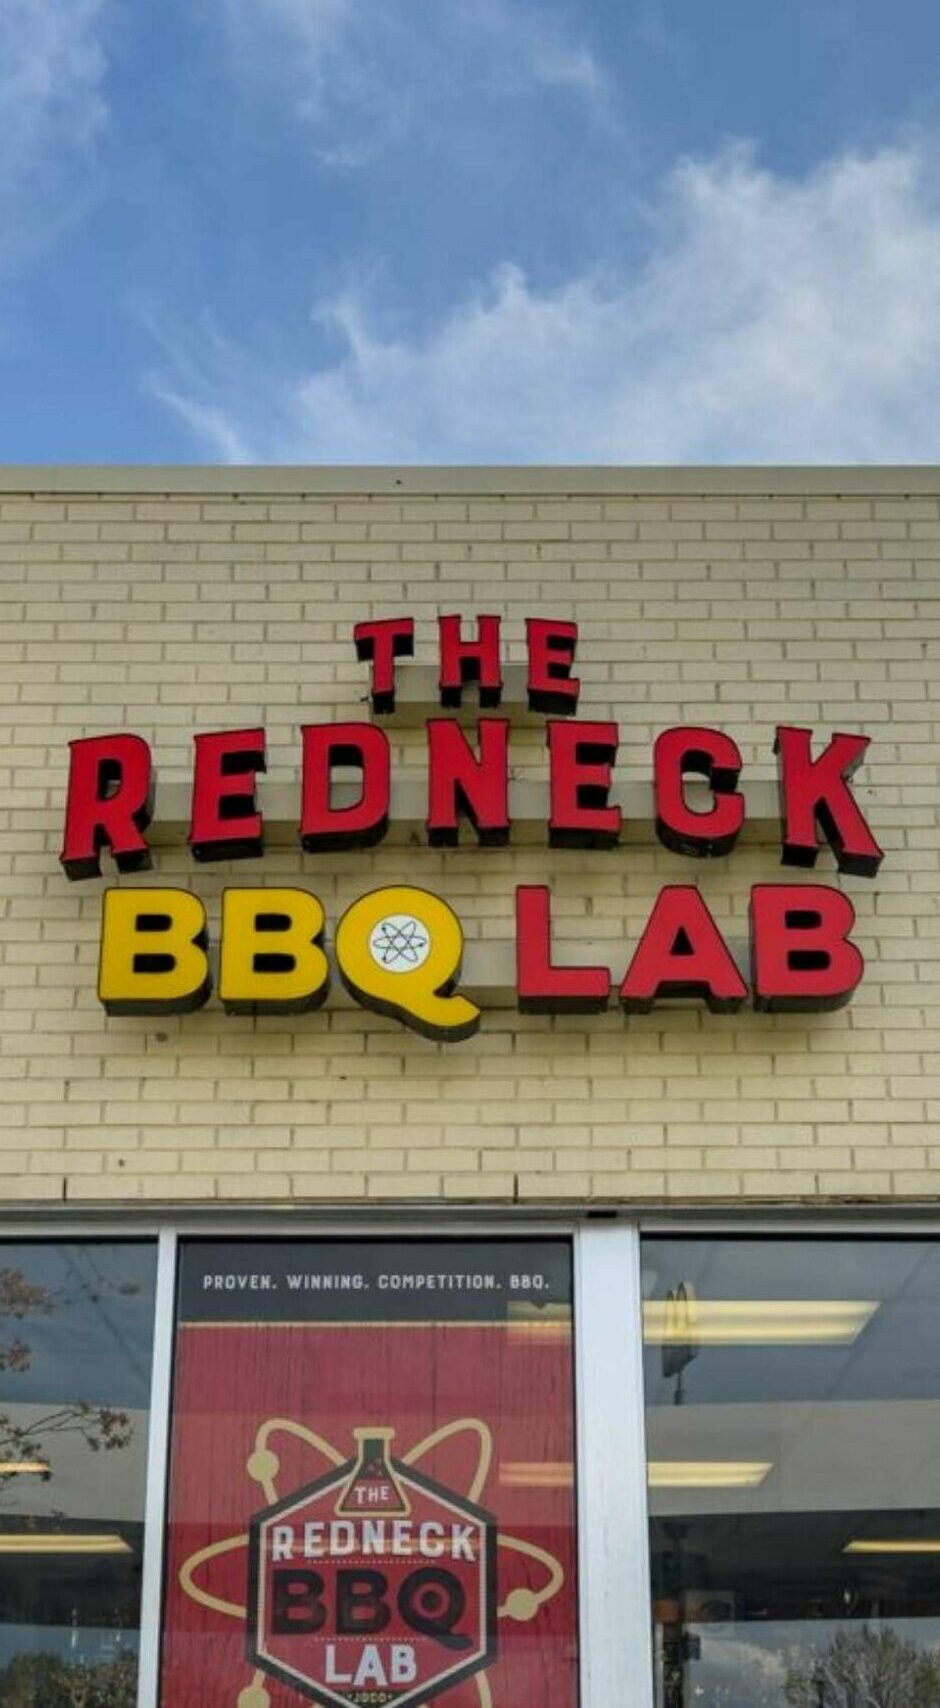 Redneck BBQ Lab